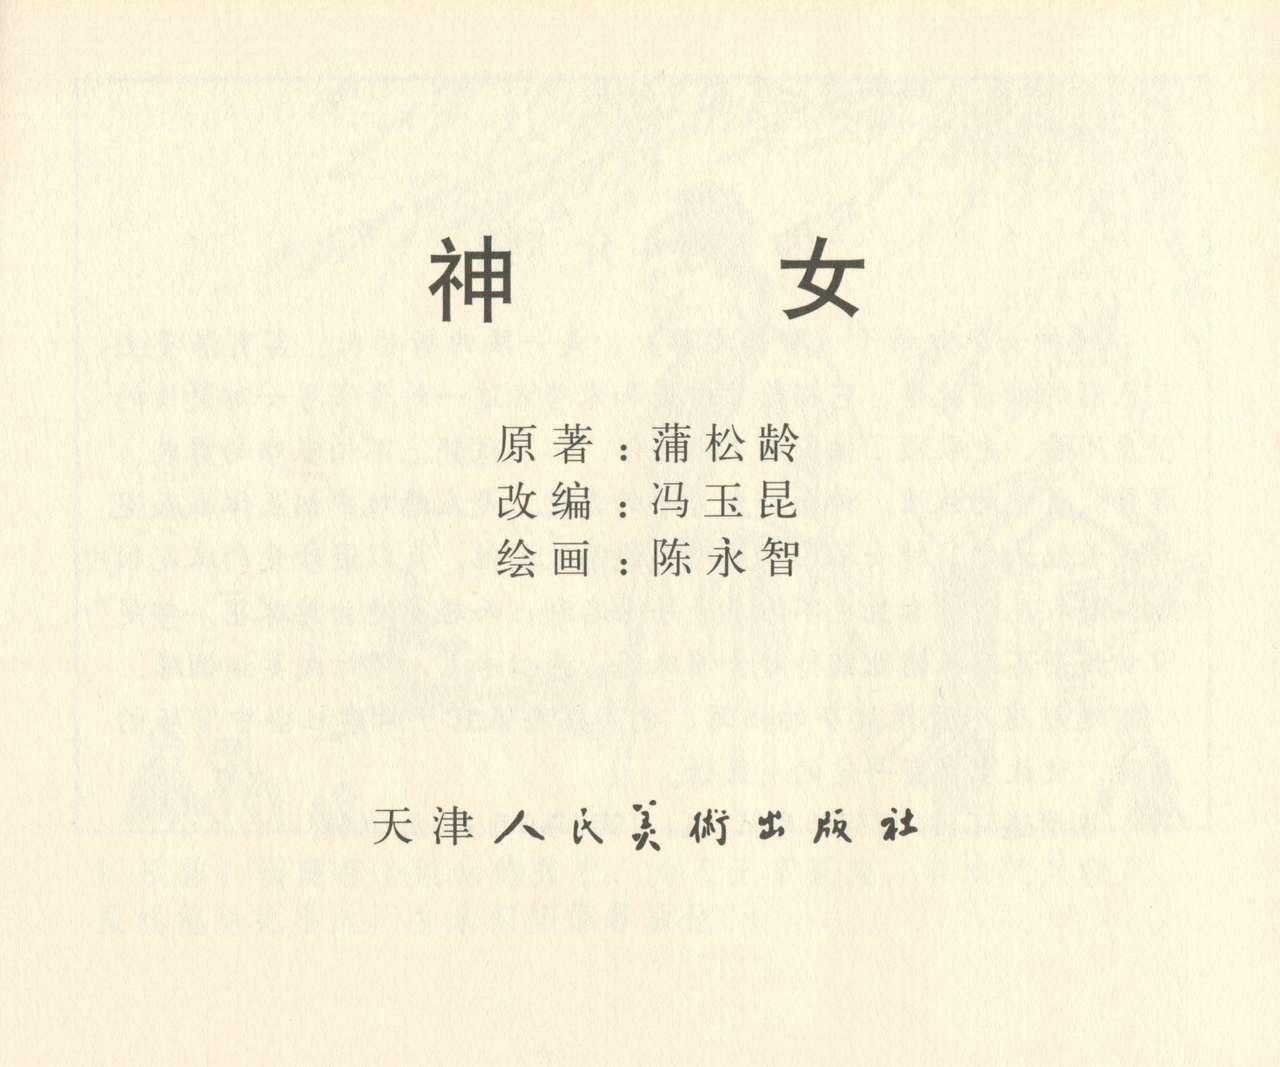 聊斋志异 张玮等绘 天津人民美术出版社 卷二十一 ~ 三十 127